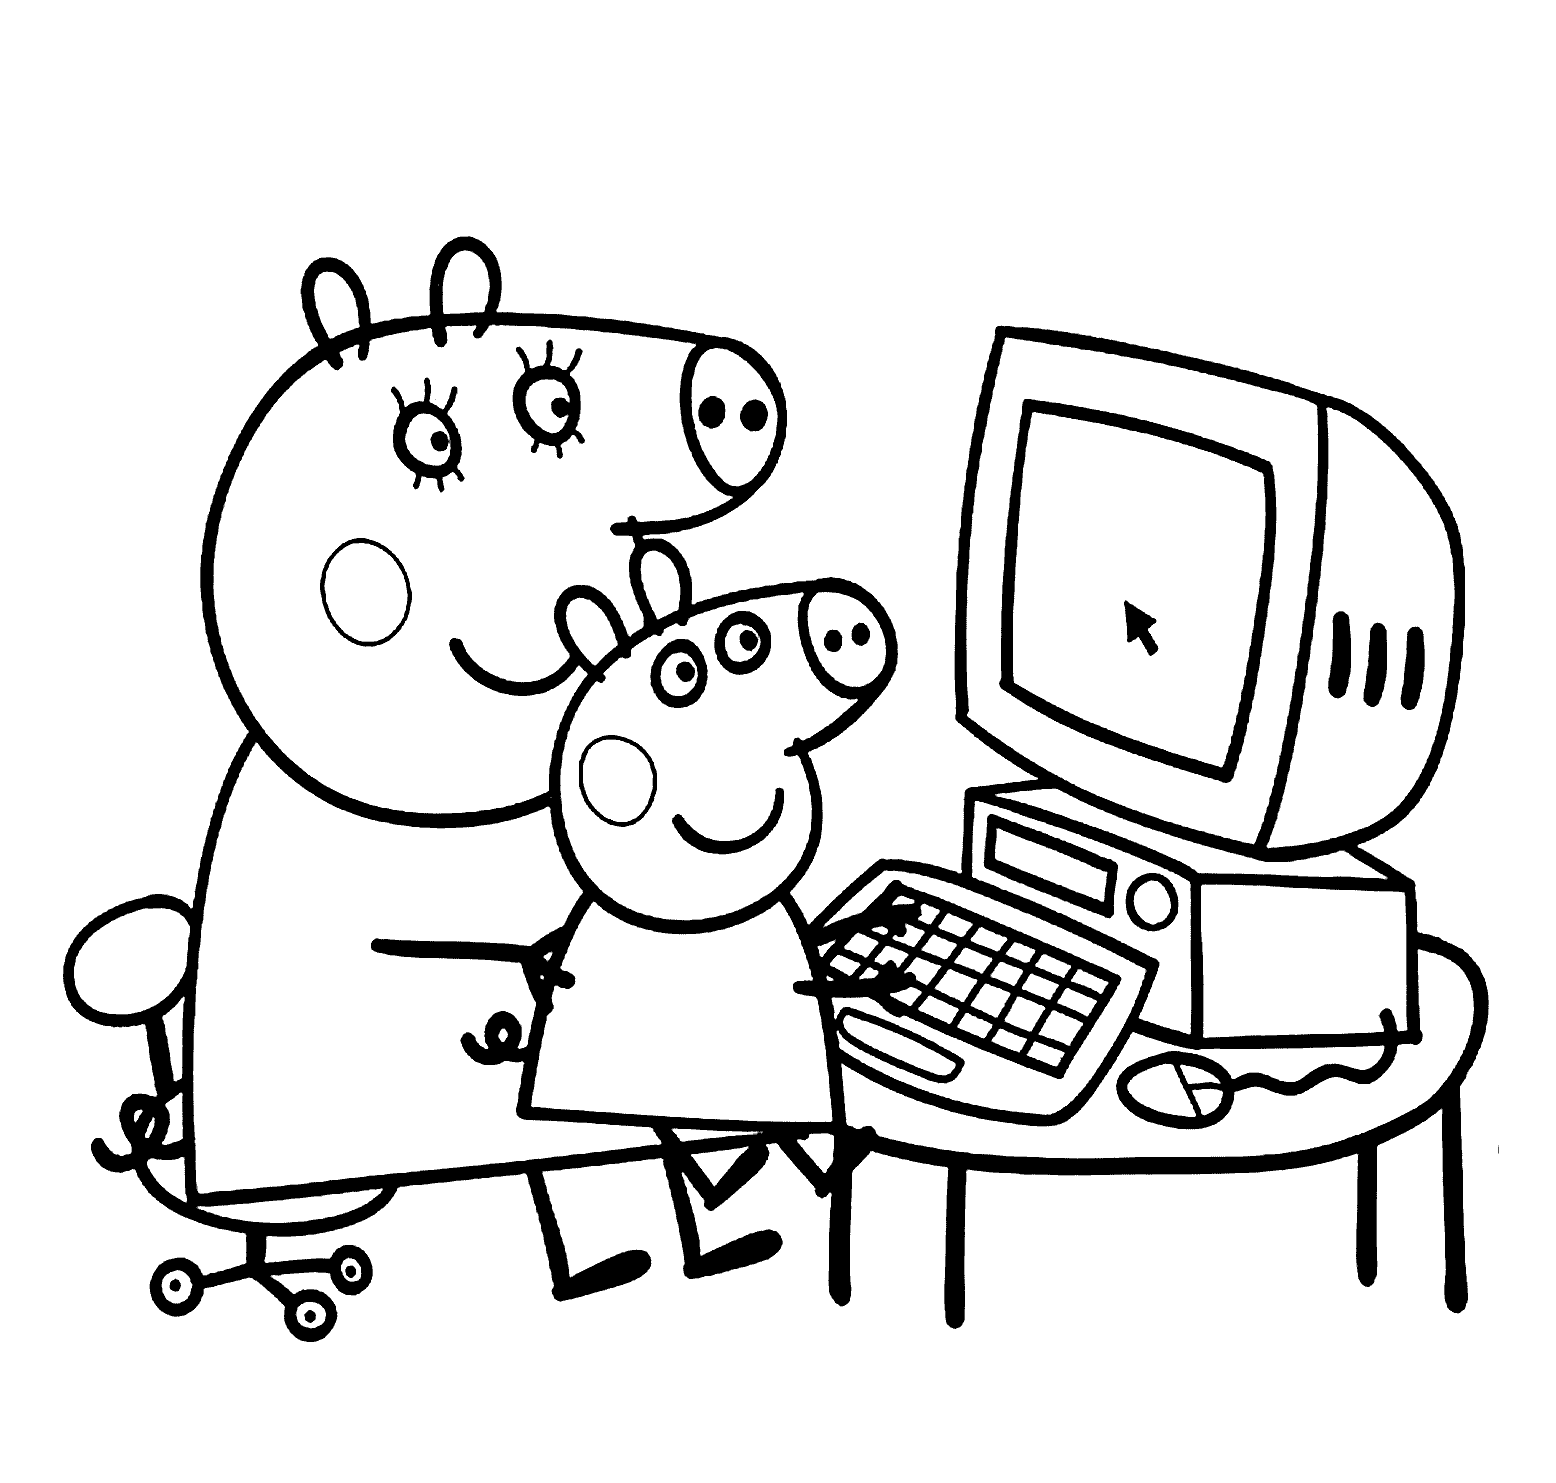 desenho de mamãe pig e peppa pig no computador para